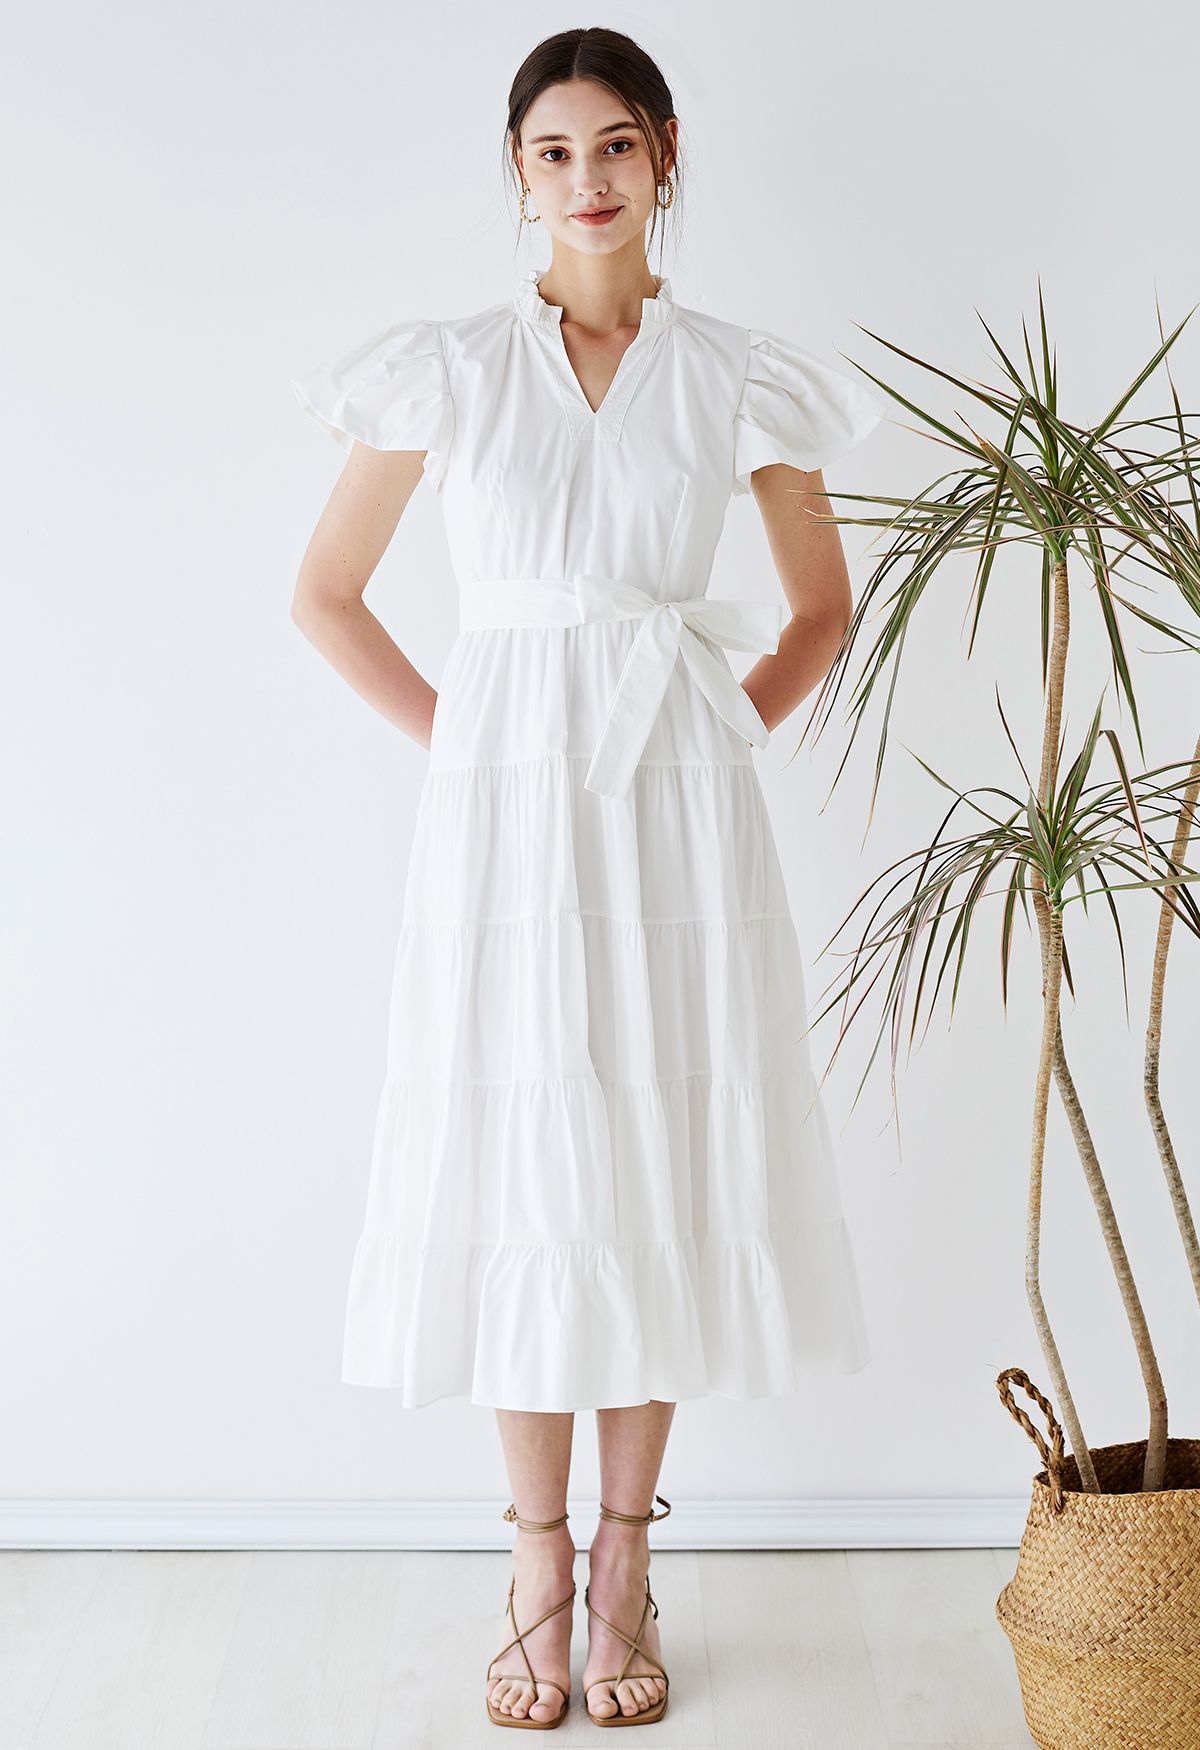 Rüschen-Baumwollkleid mit V-Ausschnitt und Flatterärmeln in Weiß